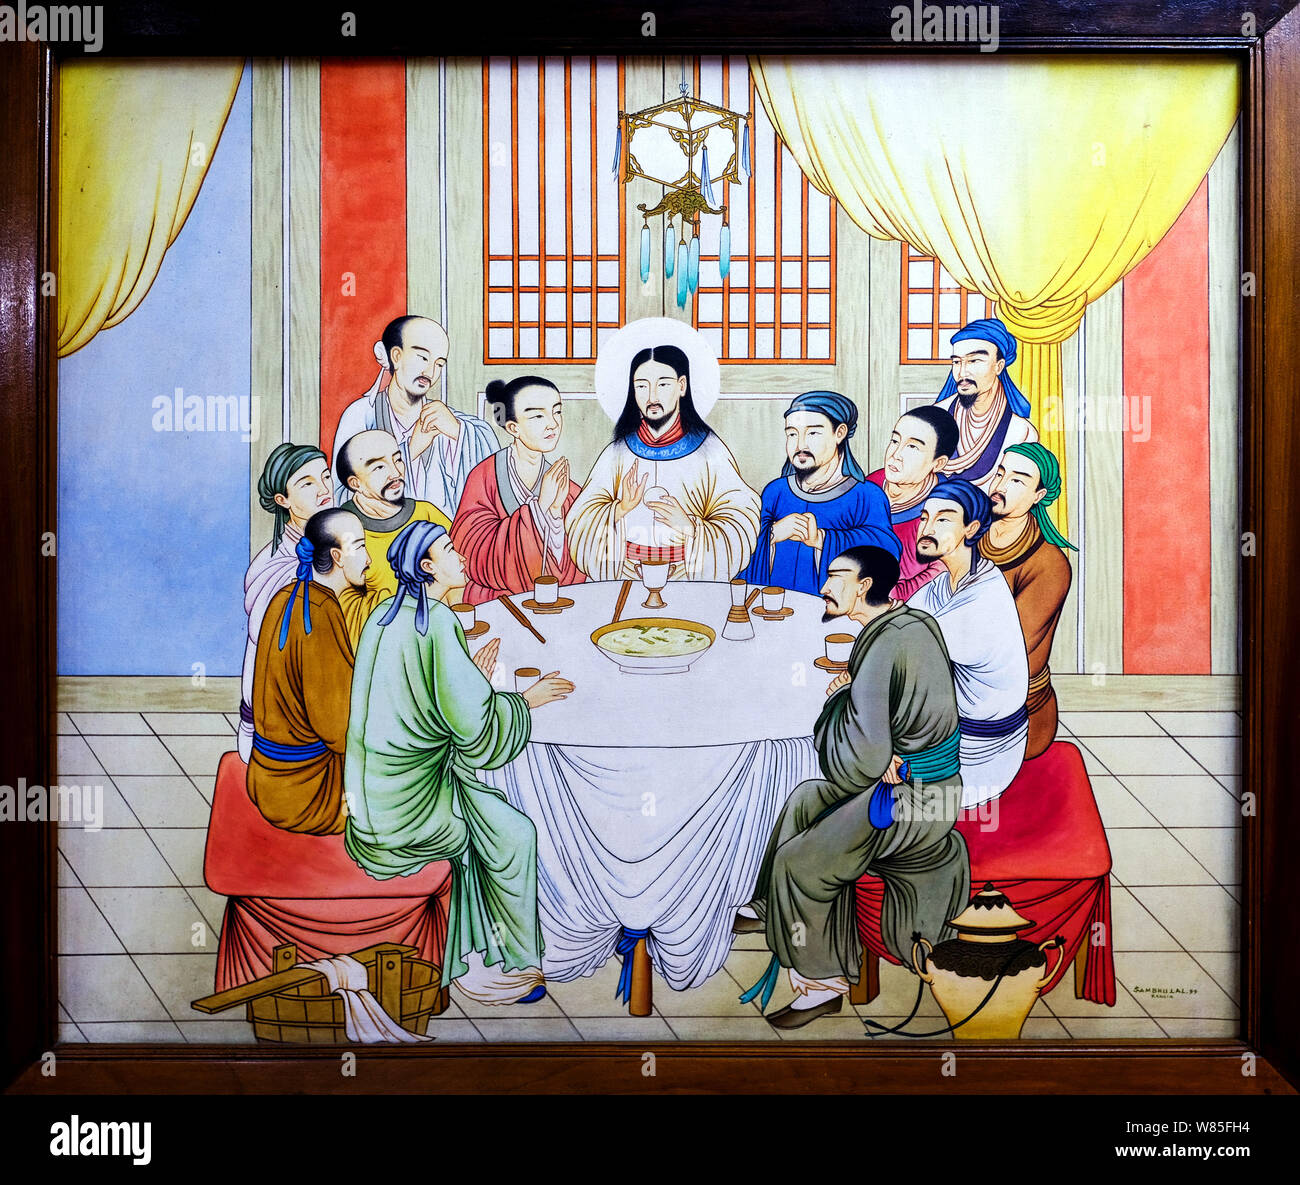 Peinture à l'huile religieux 'la Dernière Cène de Jésus', peinture avec visages de Mongolie un artiste inconnu dans la maison de l'évêque à Guwahati, Assam, Inde Banque D'Images